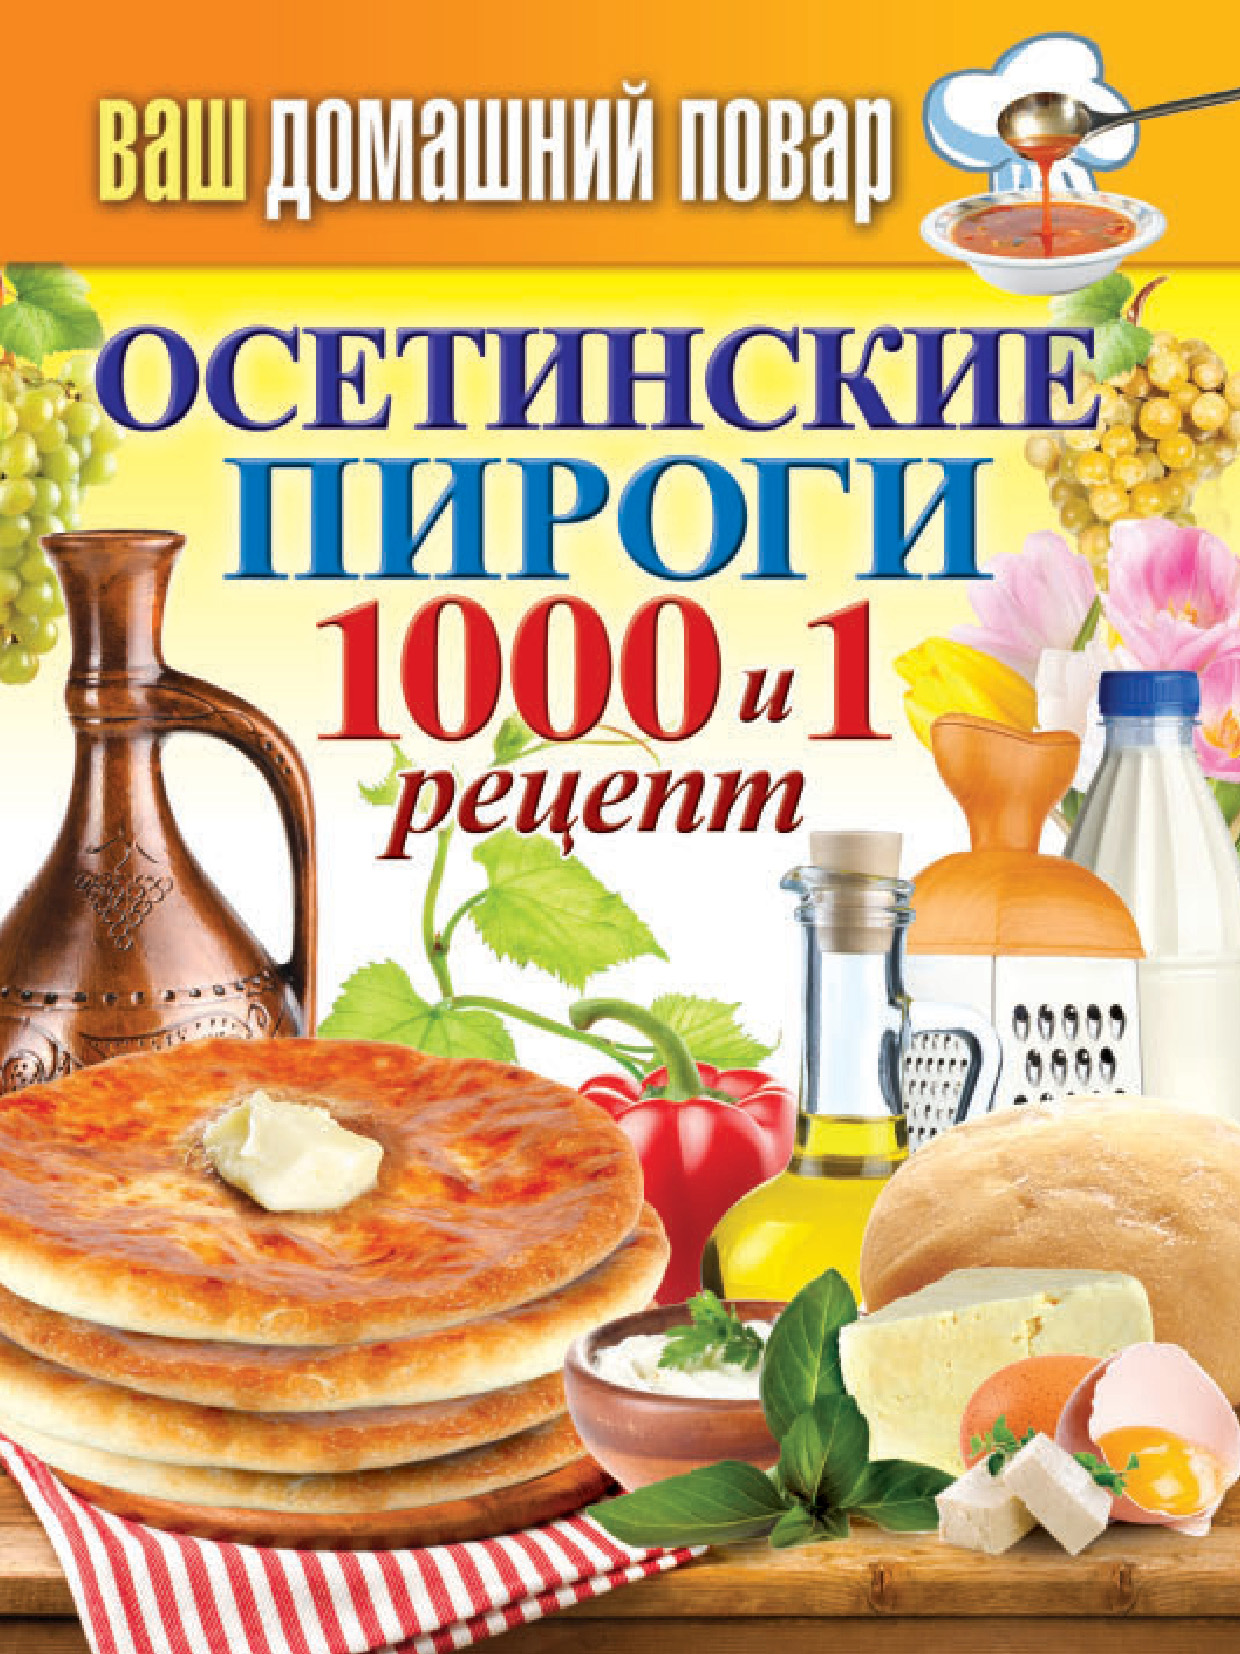 Книга Осетинские пироги. 1000 и 1 рецепт из серии Ваш домашний повар, созданная Сергей Кашин, может относится к жанру Кулинария. Стоимость электронной книги Осетинские пироги. 1000 и 1 рецепт с идентификатором 8921855 составляет 99.00 руб.